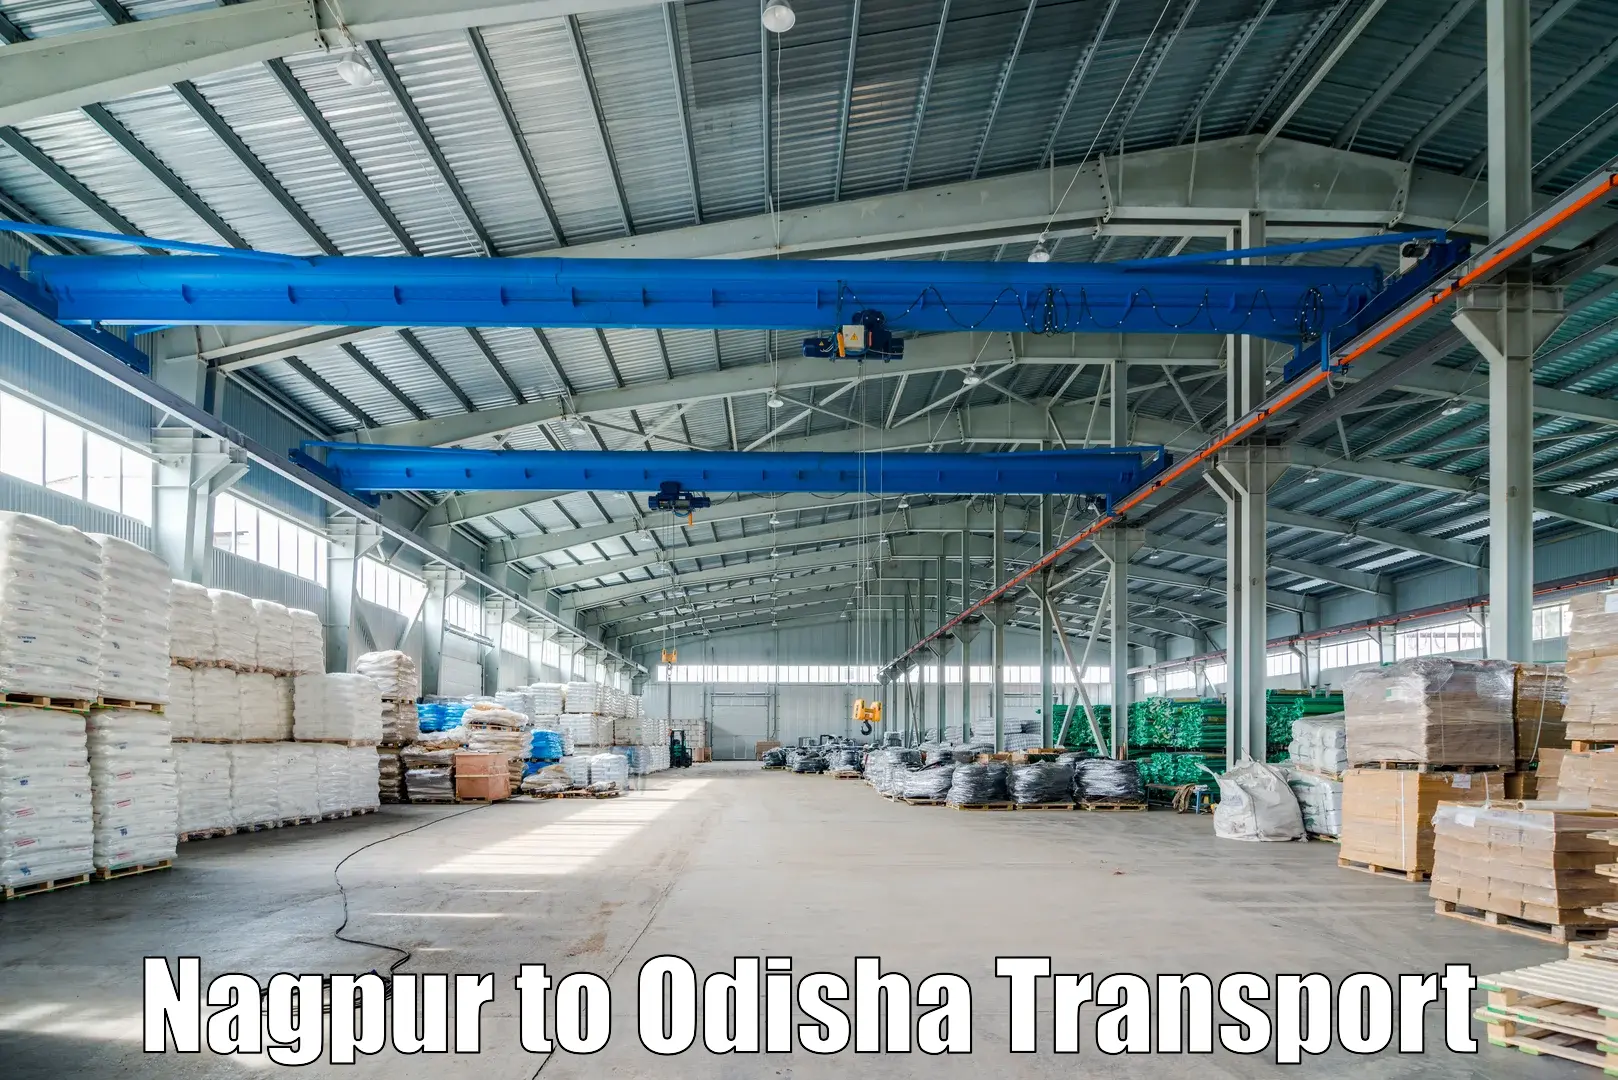 Land transport services Nagpur to Mahakalapada